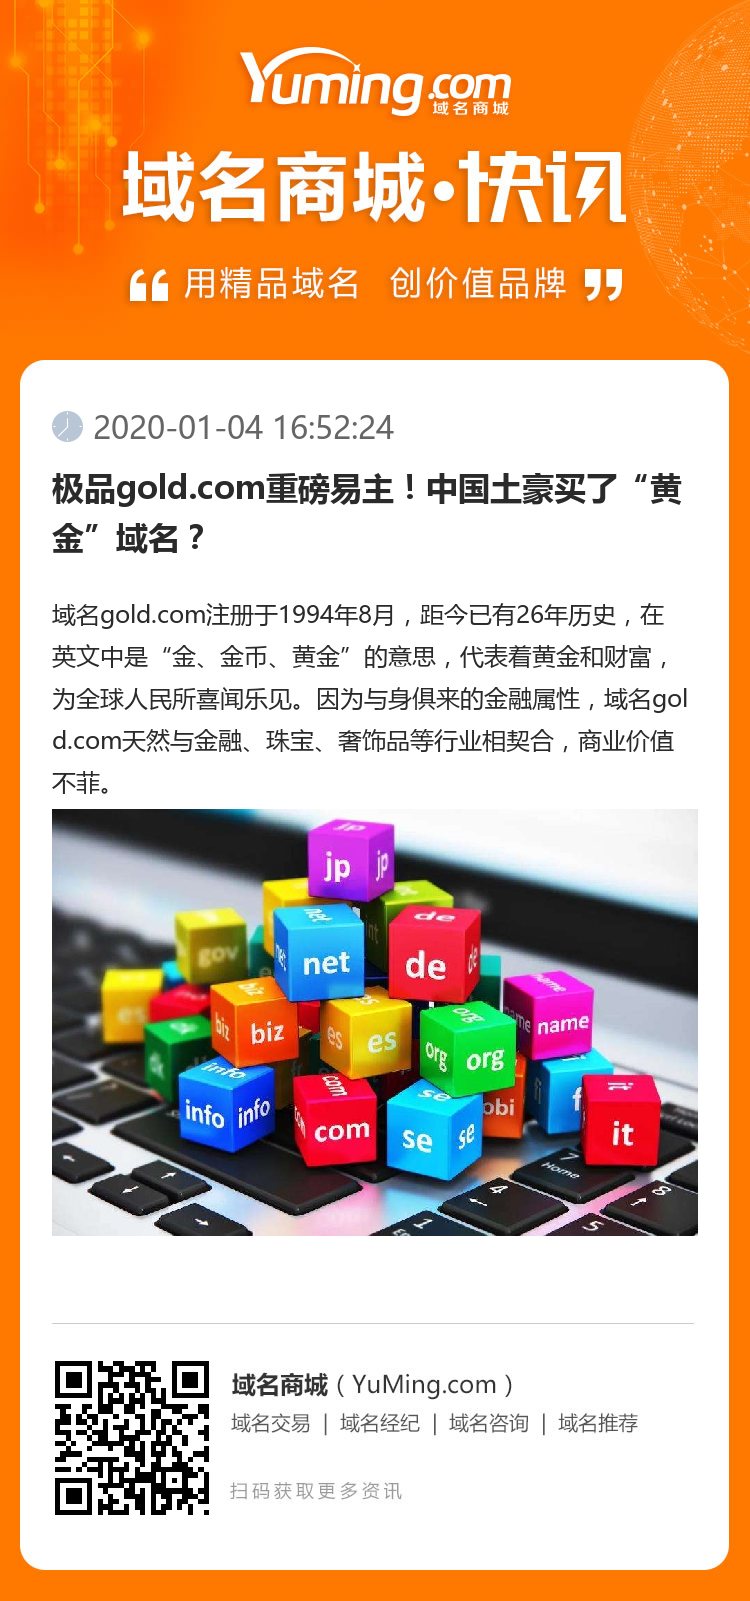 极品gold.com重磅易主！中国土豪买了“黄金”域名？